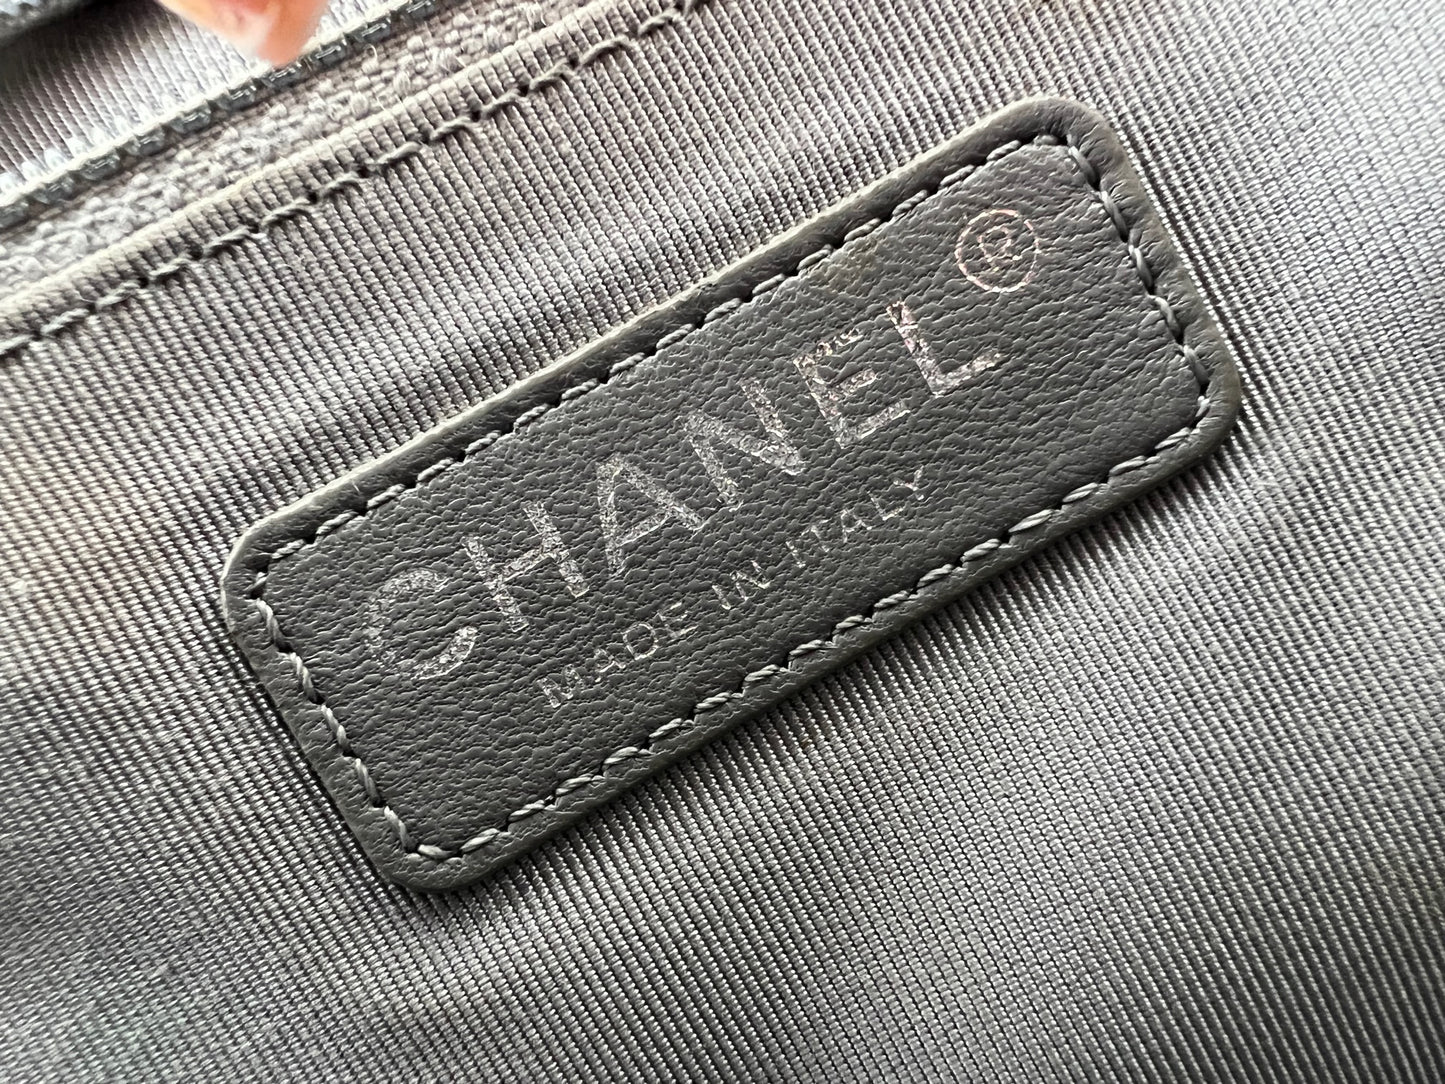 Used Chanel Bag/Shoulder Bag/--/Black/Chevron Stitch/Chanel Bag